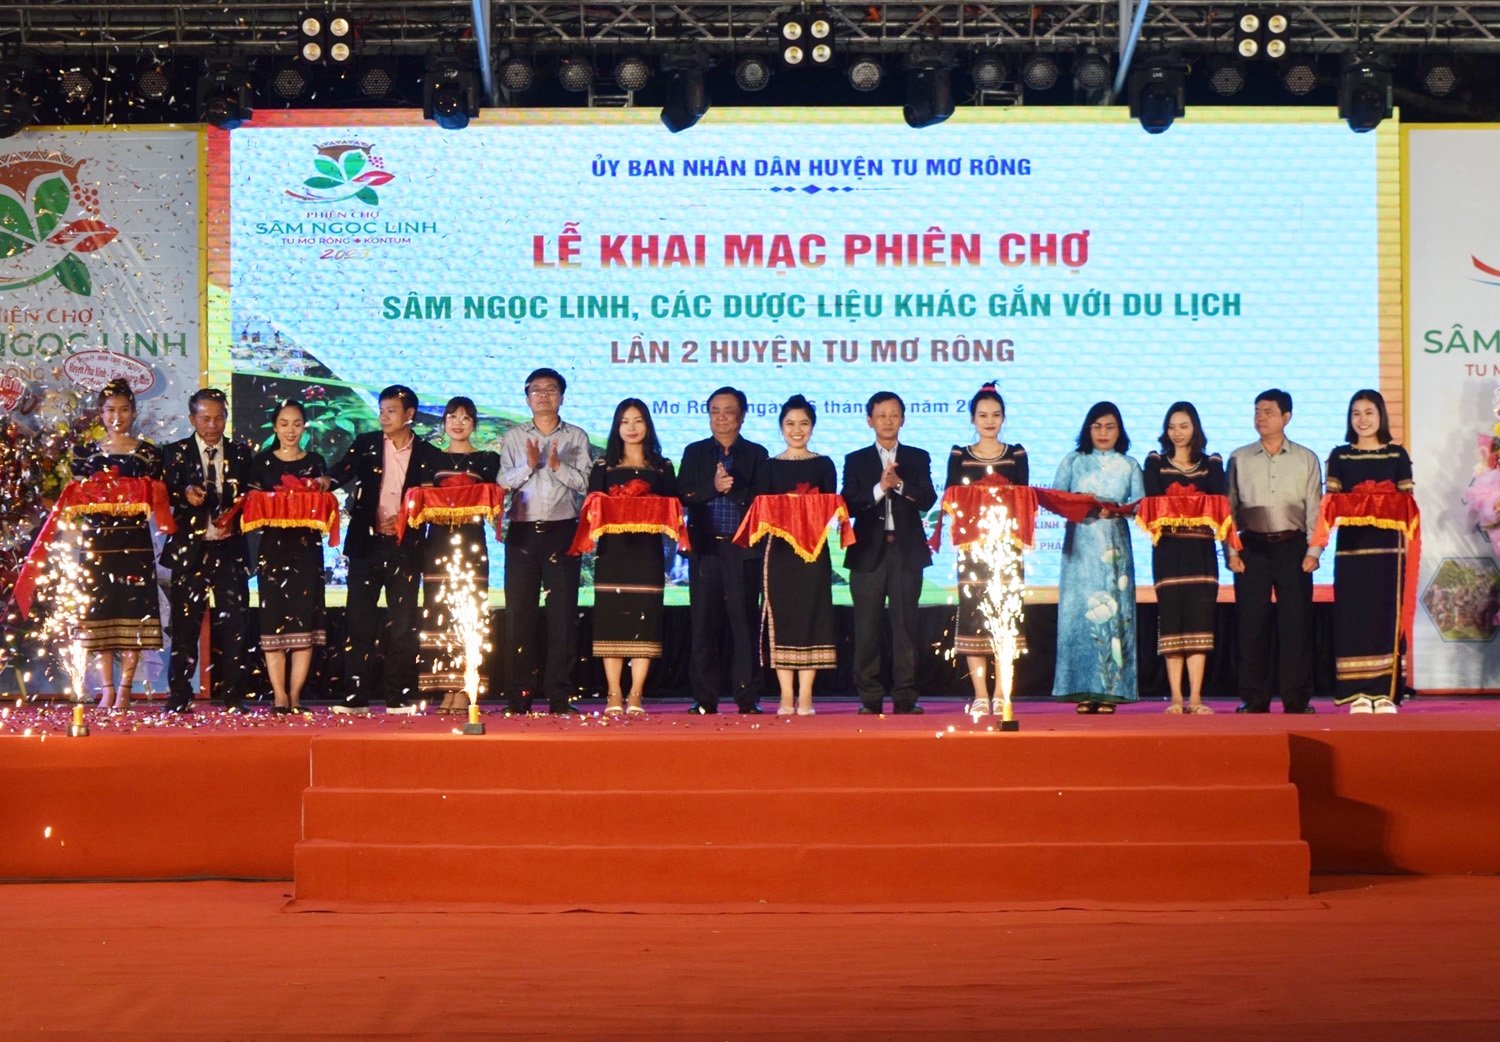 Các đại biểu cắt băng khai mạc Phiên chợ Sâm Ngọc Linh, các dược liệu khác gắn với du lịch lần 2 huyện Tu Mơ Rông năm 2023